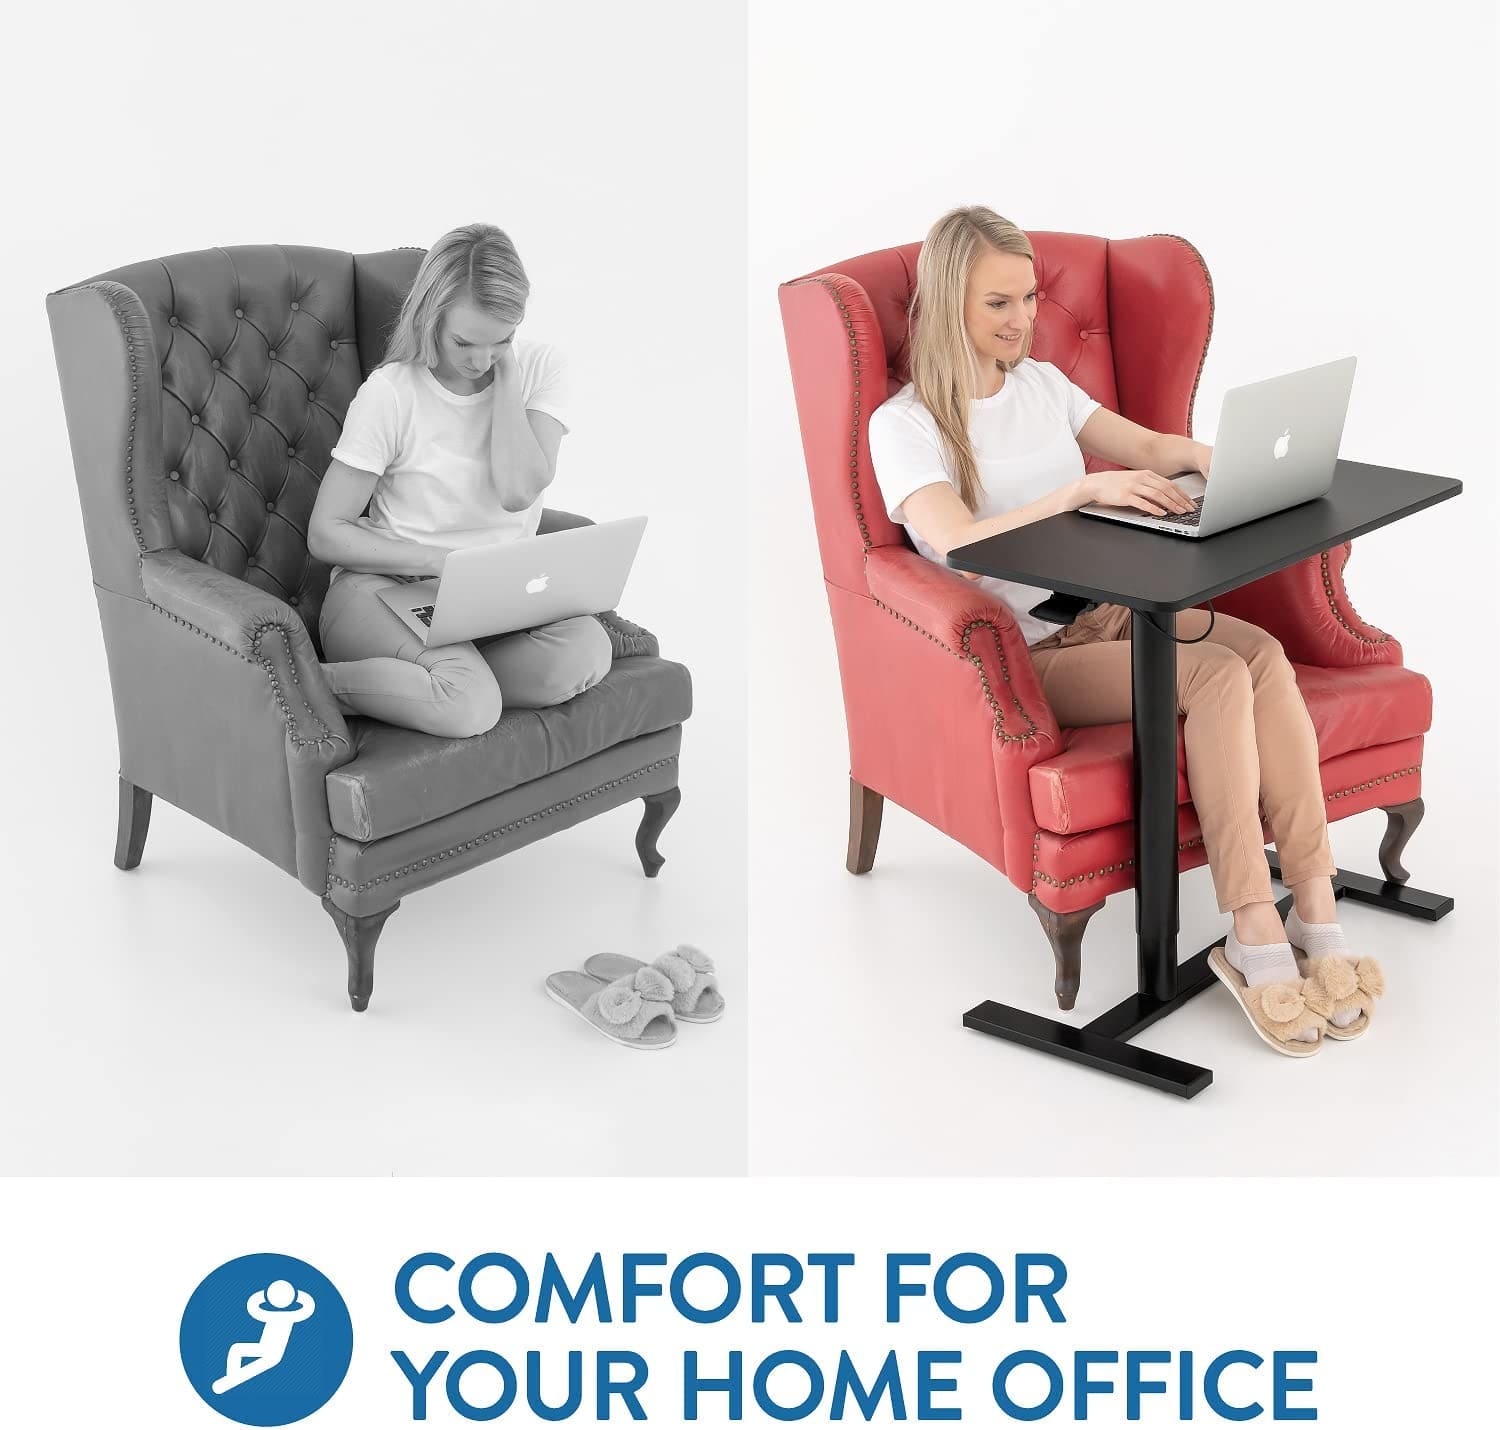 Table pneumatique pour ordinateur portable, table à roulettes pour une utilisation assise et debout, Tatkraft Bliss